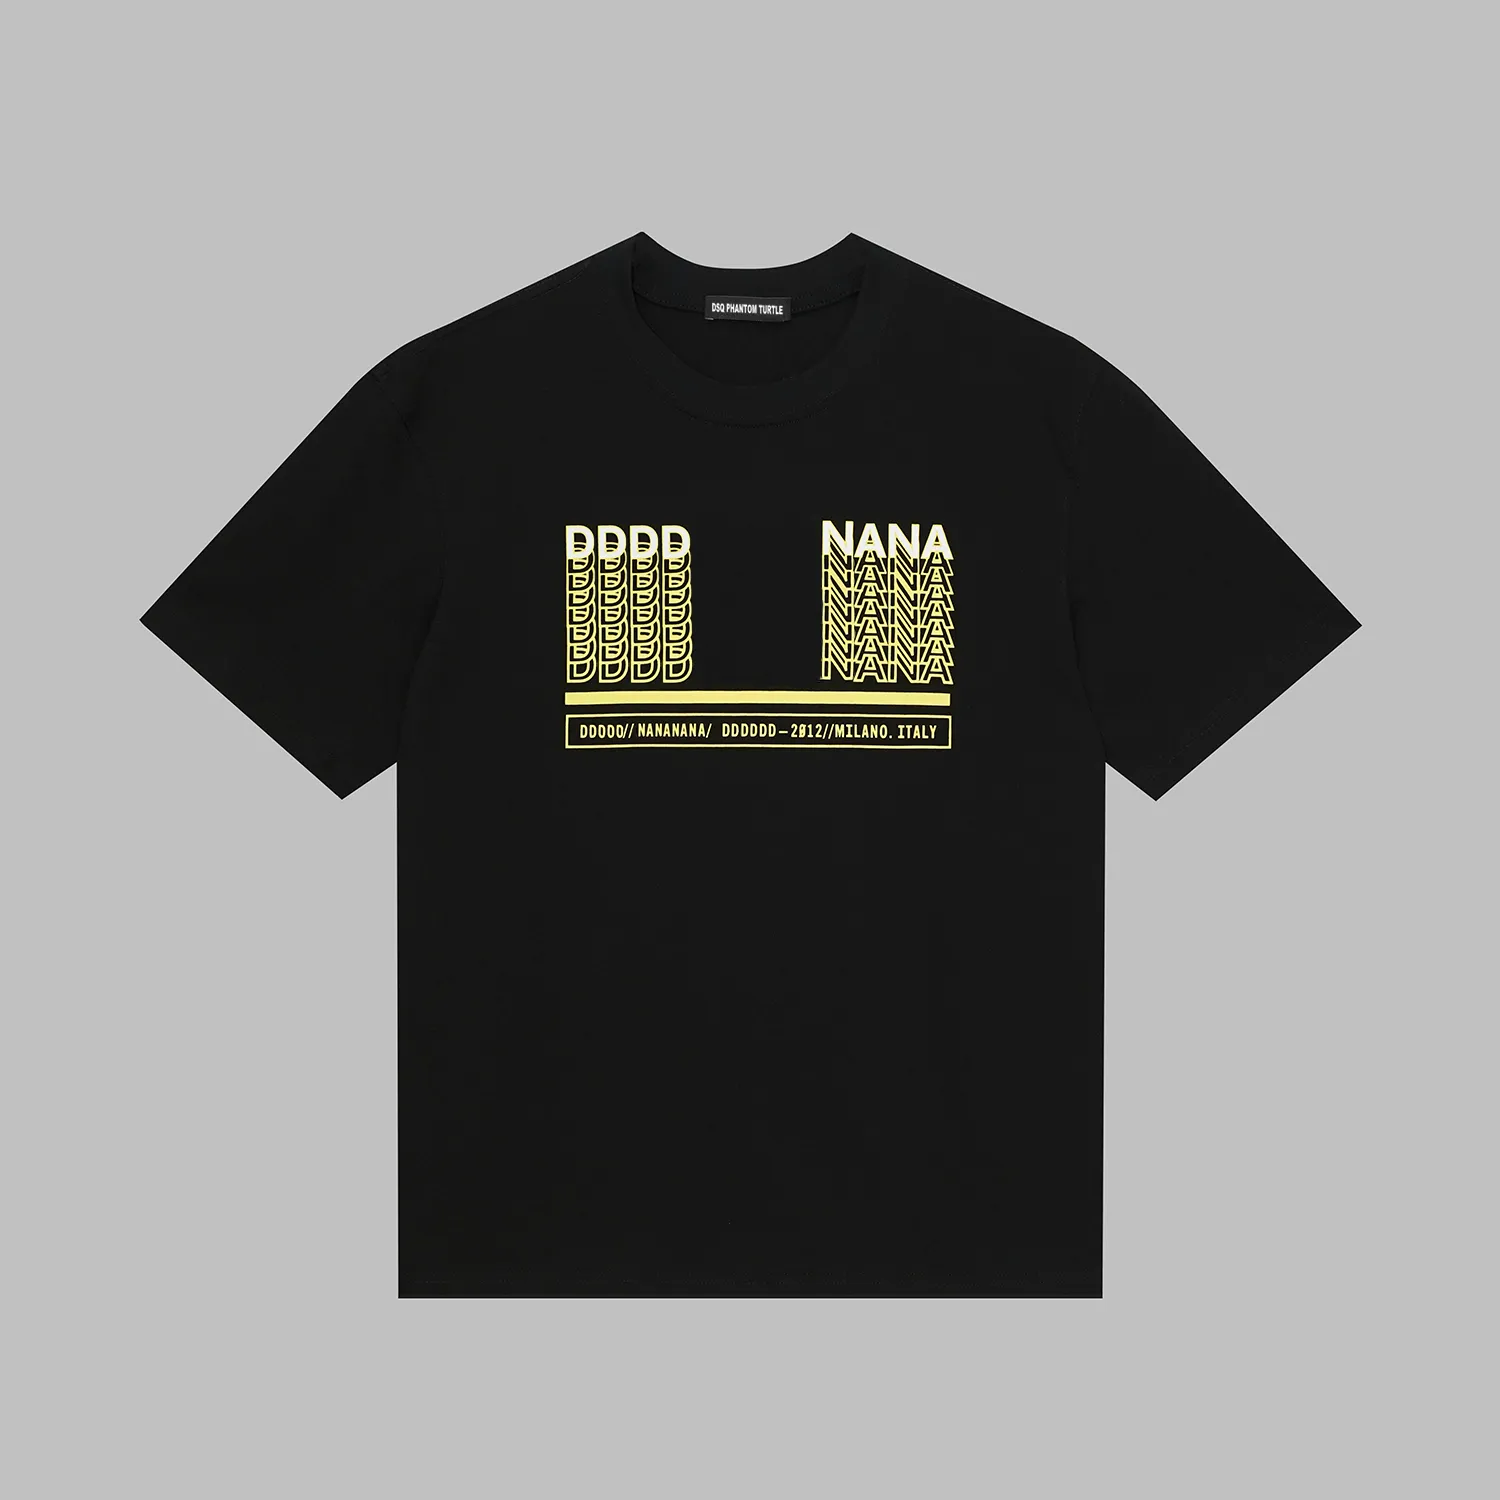 DSQ PHANTOM TURTLE Herren Designer T-Shirt Italienisches Milan Fashion Logo Print T-Shirt Sommer Schwarz Weiß T-Shirt Hip Hop Streetwear 100% Baumwolle Tops Plus Größe 51585